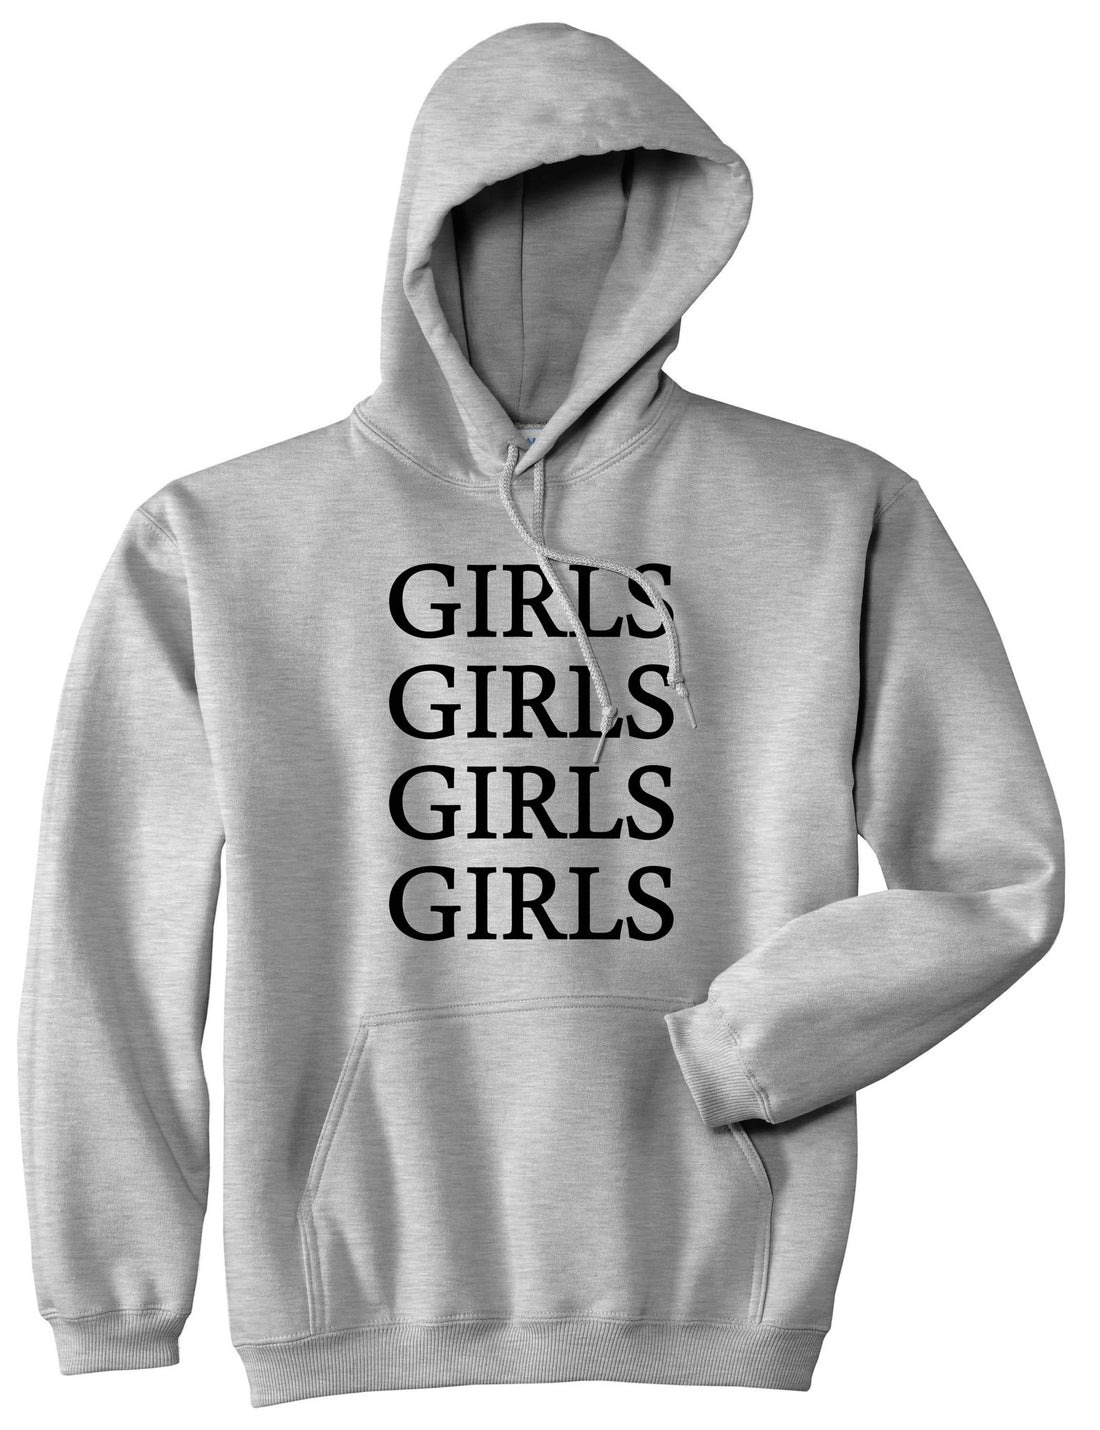 Girls Girls Girls Boys Kids Pullover Hoodie Hoody in Grey by Kings Of NY